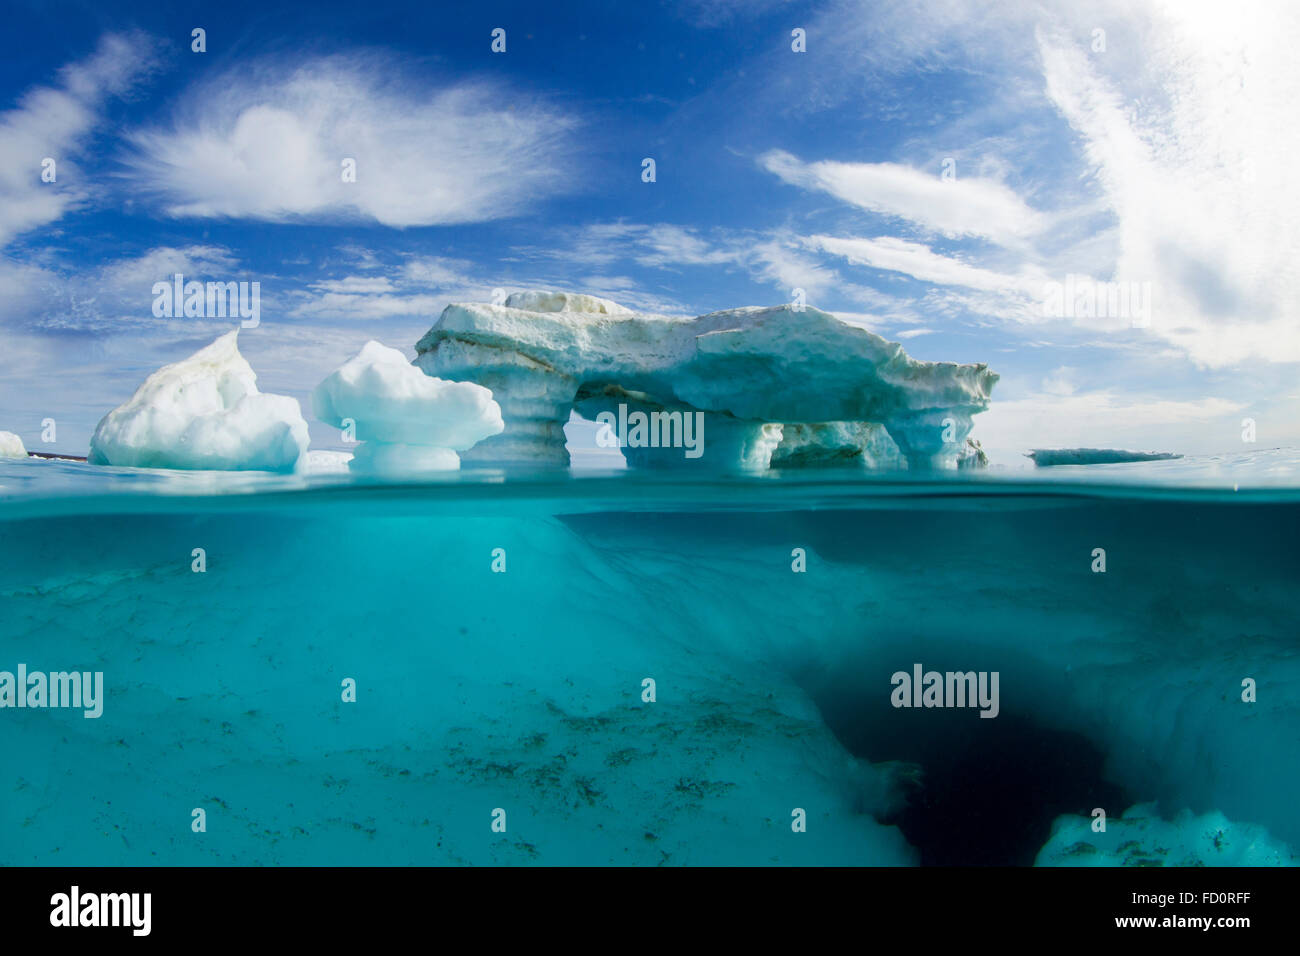 Le Canada, le territoire du Nunavut, Repulse Bay, sous-vue de la fonte iceberg dans Îles Port sur la baie d'Hudson, juste au sud de l'Arctique Banque D'Images